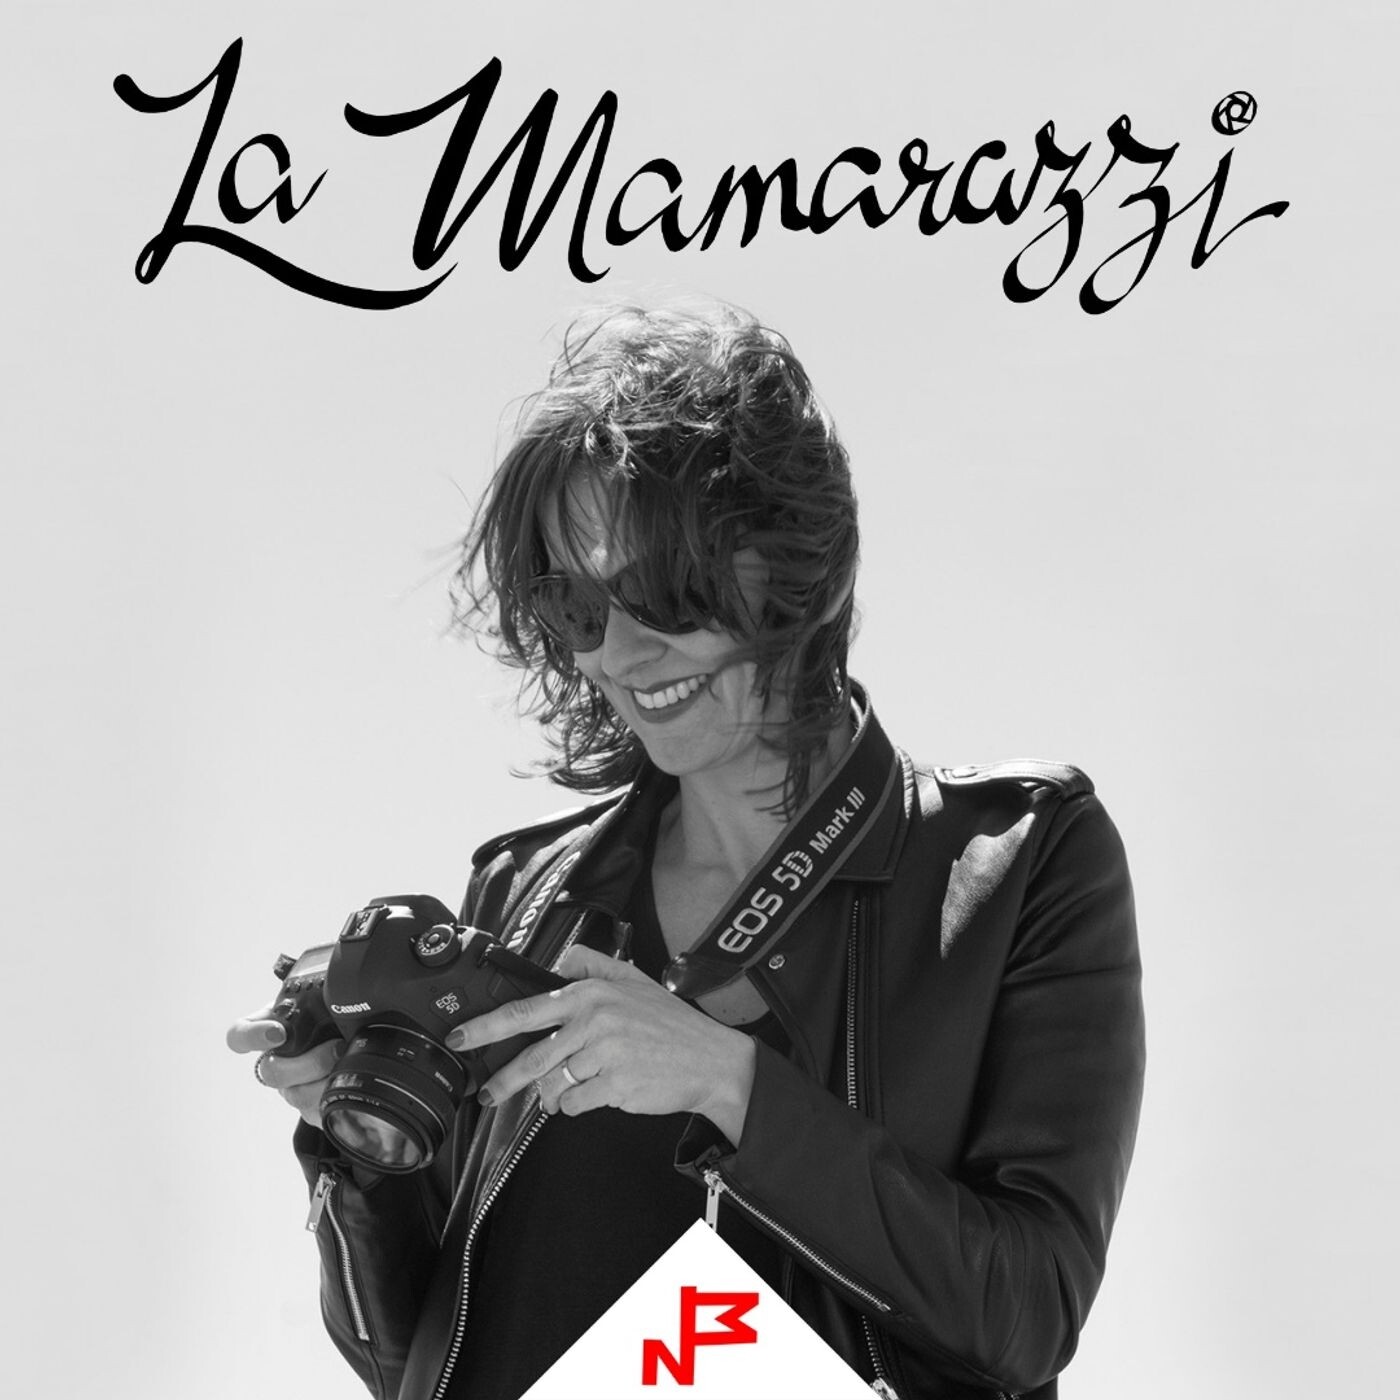 La Mamarazzi 018 – JPOD18 – Bookjockey – Fotógrafo recomendado: Joan Fontcuberta (vol. 1)